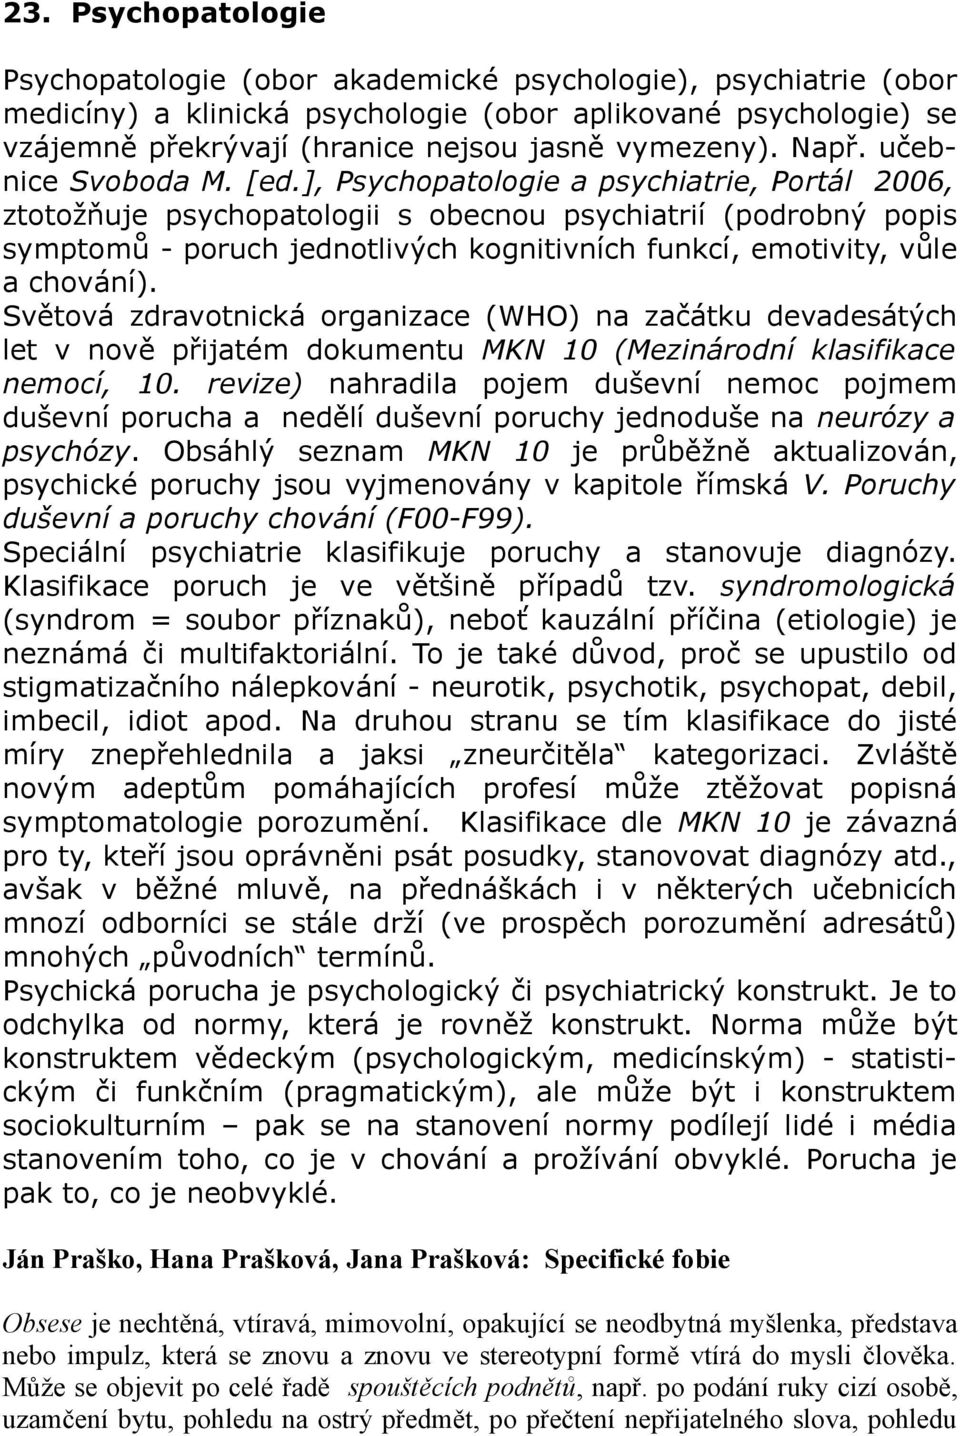 ], Psychopatologie a psychiatrie, Portál 2006, ztotožňuje psychopatologii s obecnou psychiatrií (podrobný popis symptomů - poruch jednotlivých kognitivních funkcí, emotivity, vůle a chování).